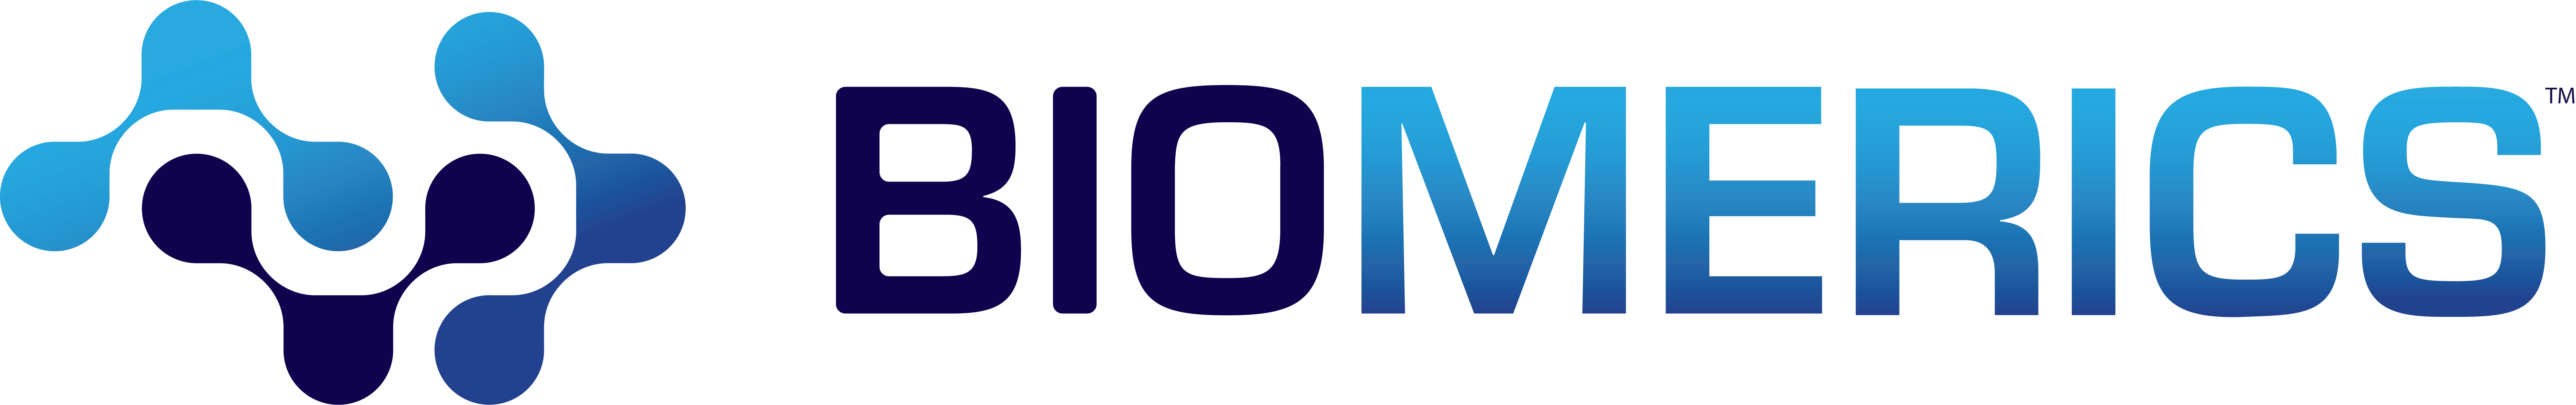 biomerics logo